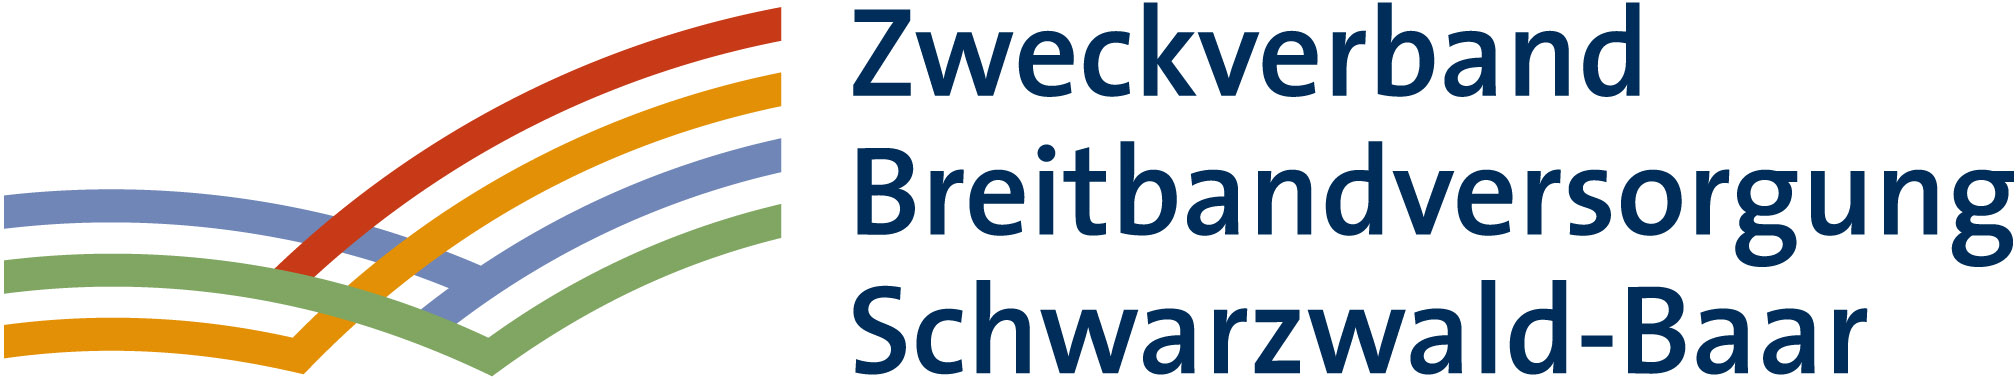 Logo Zweckverband Breitbandversorgung Schwarzwald-Baar